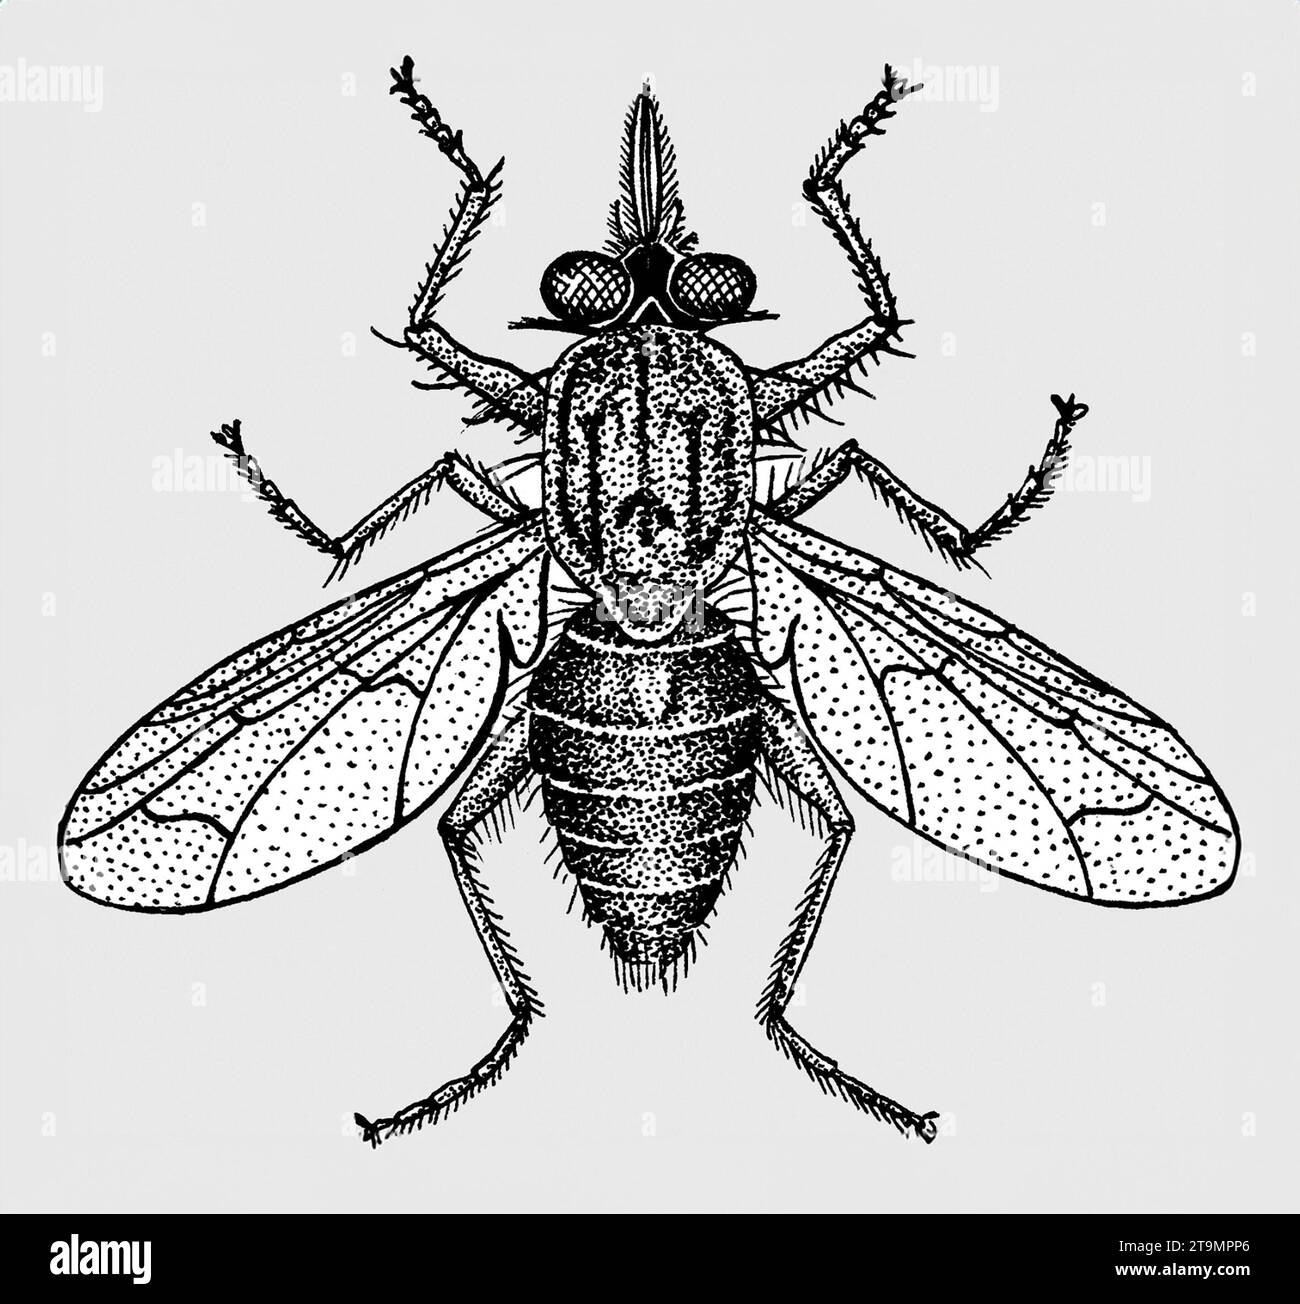 Tsetse Fly. Illustration of a Tsetse fly, genus Glossina. Stock Photo